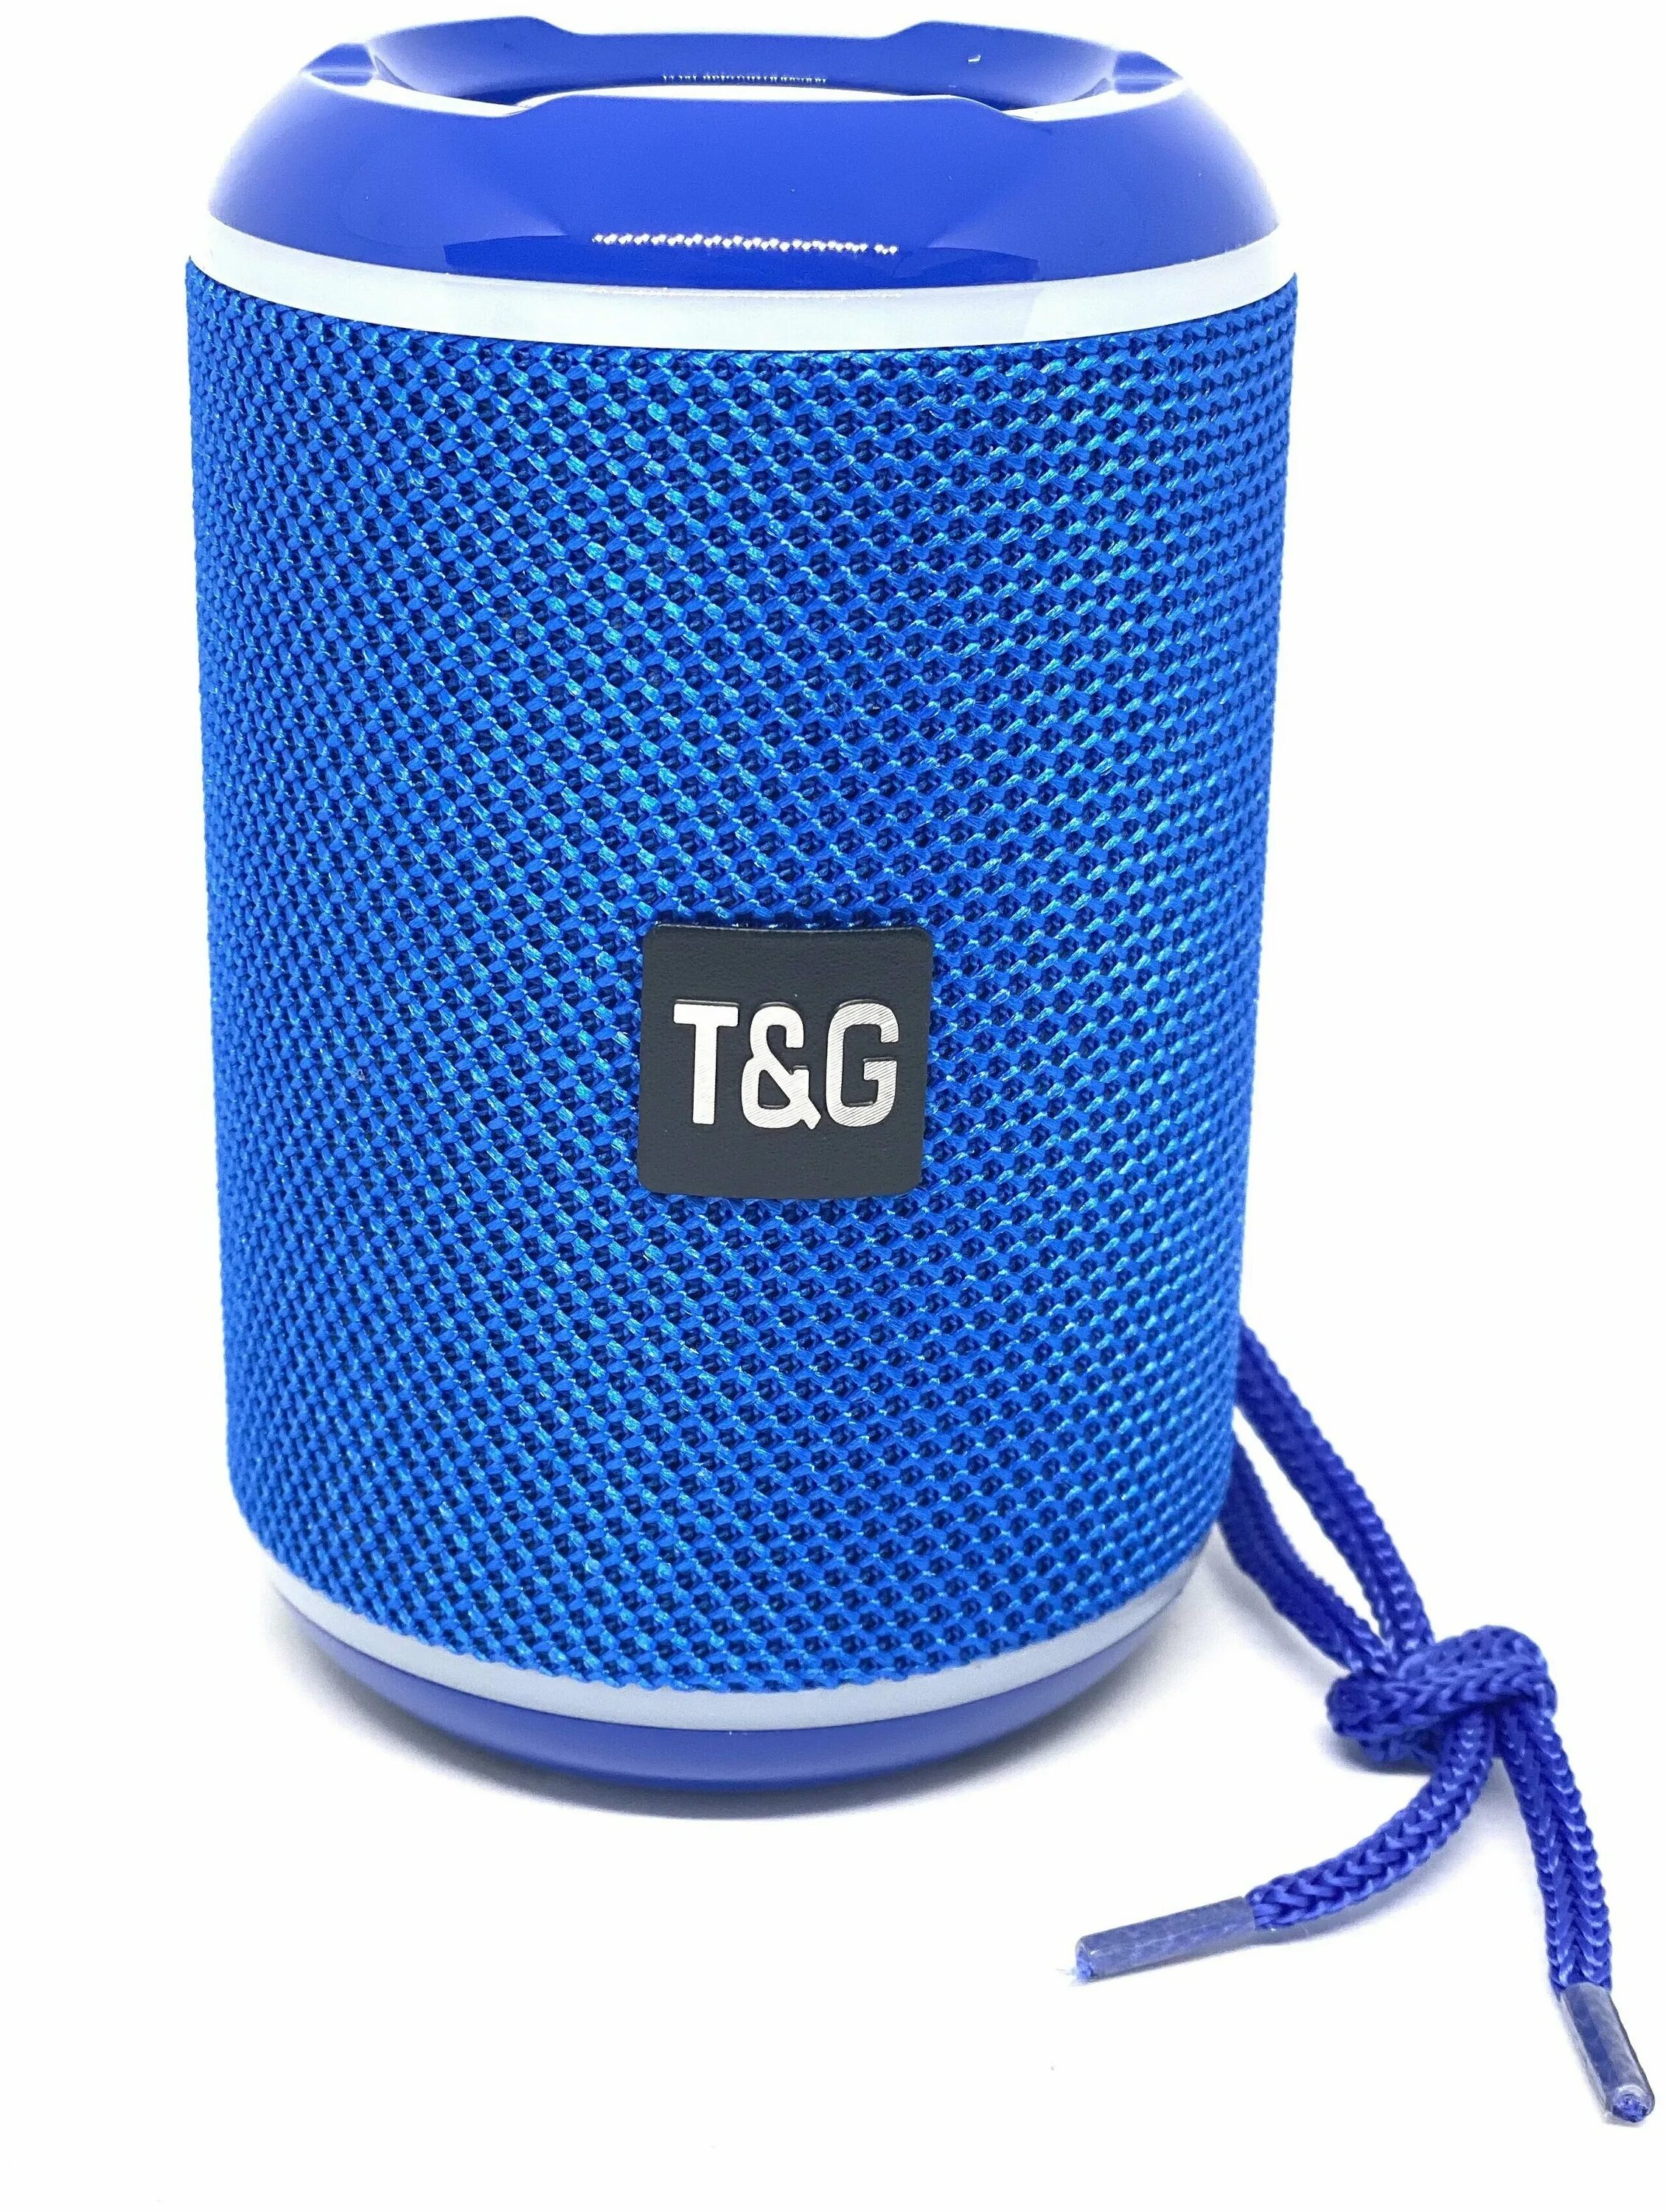 Колонка tg609 синяя. Колонка t&504. Портативная Bluetooth колонка t&g TG-518 (синий). ZBS w013 голубой колонка. Портативные колонки синий